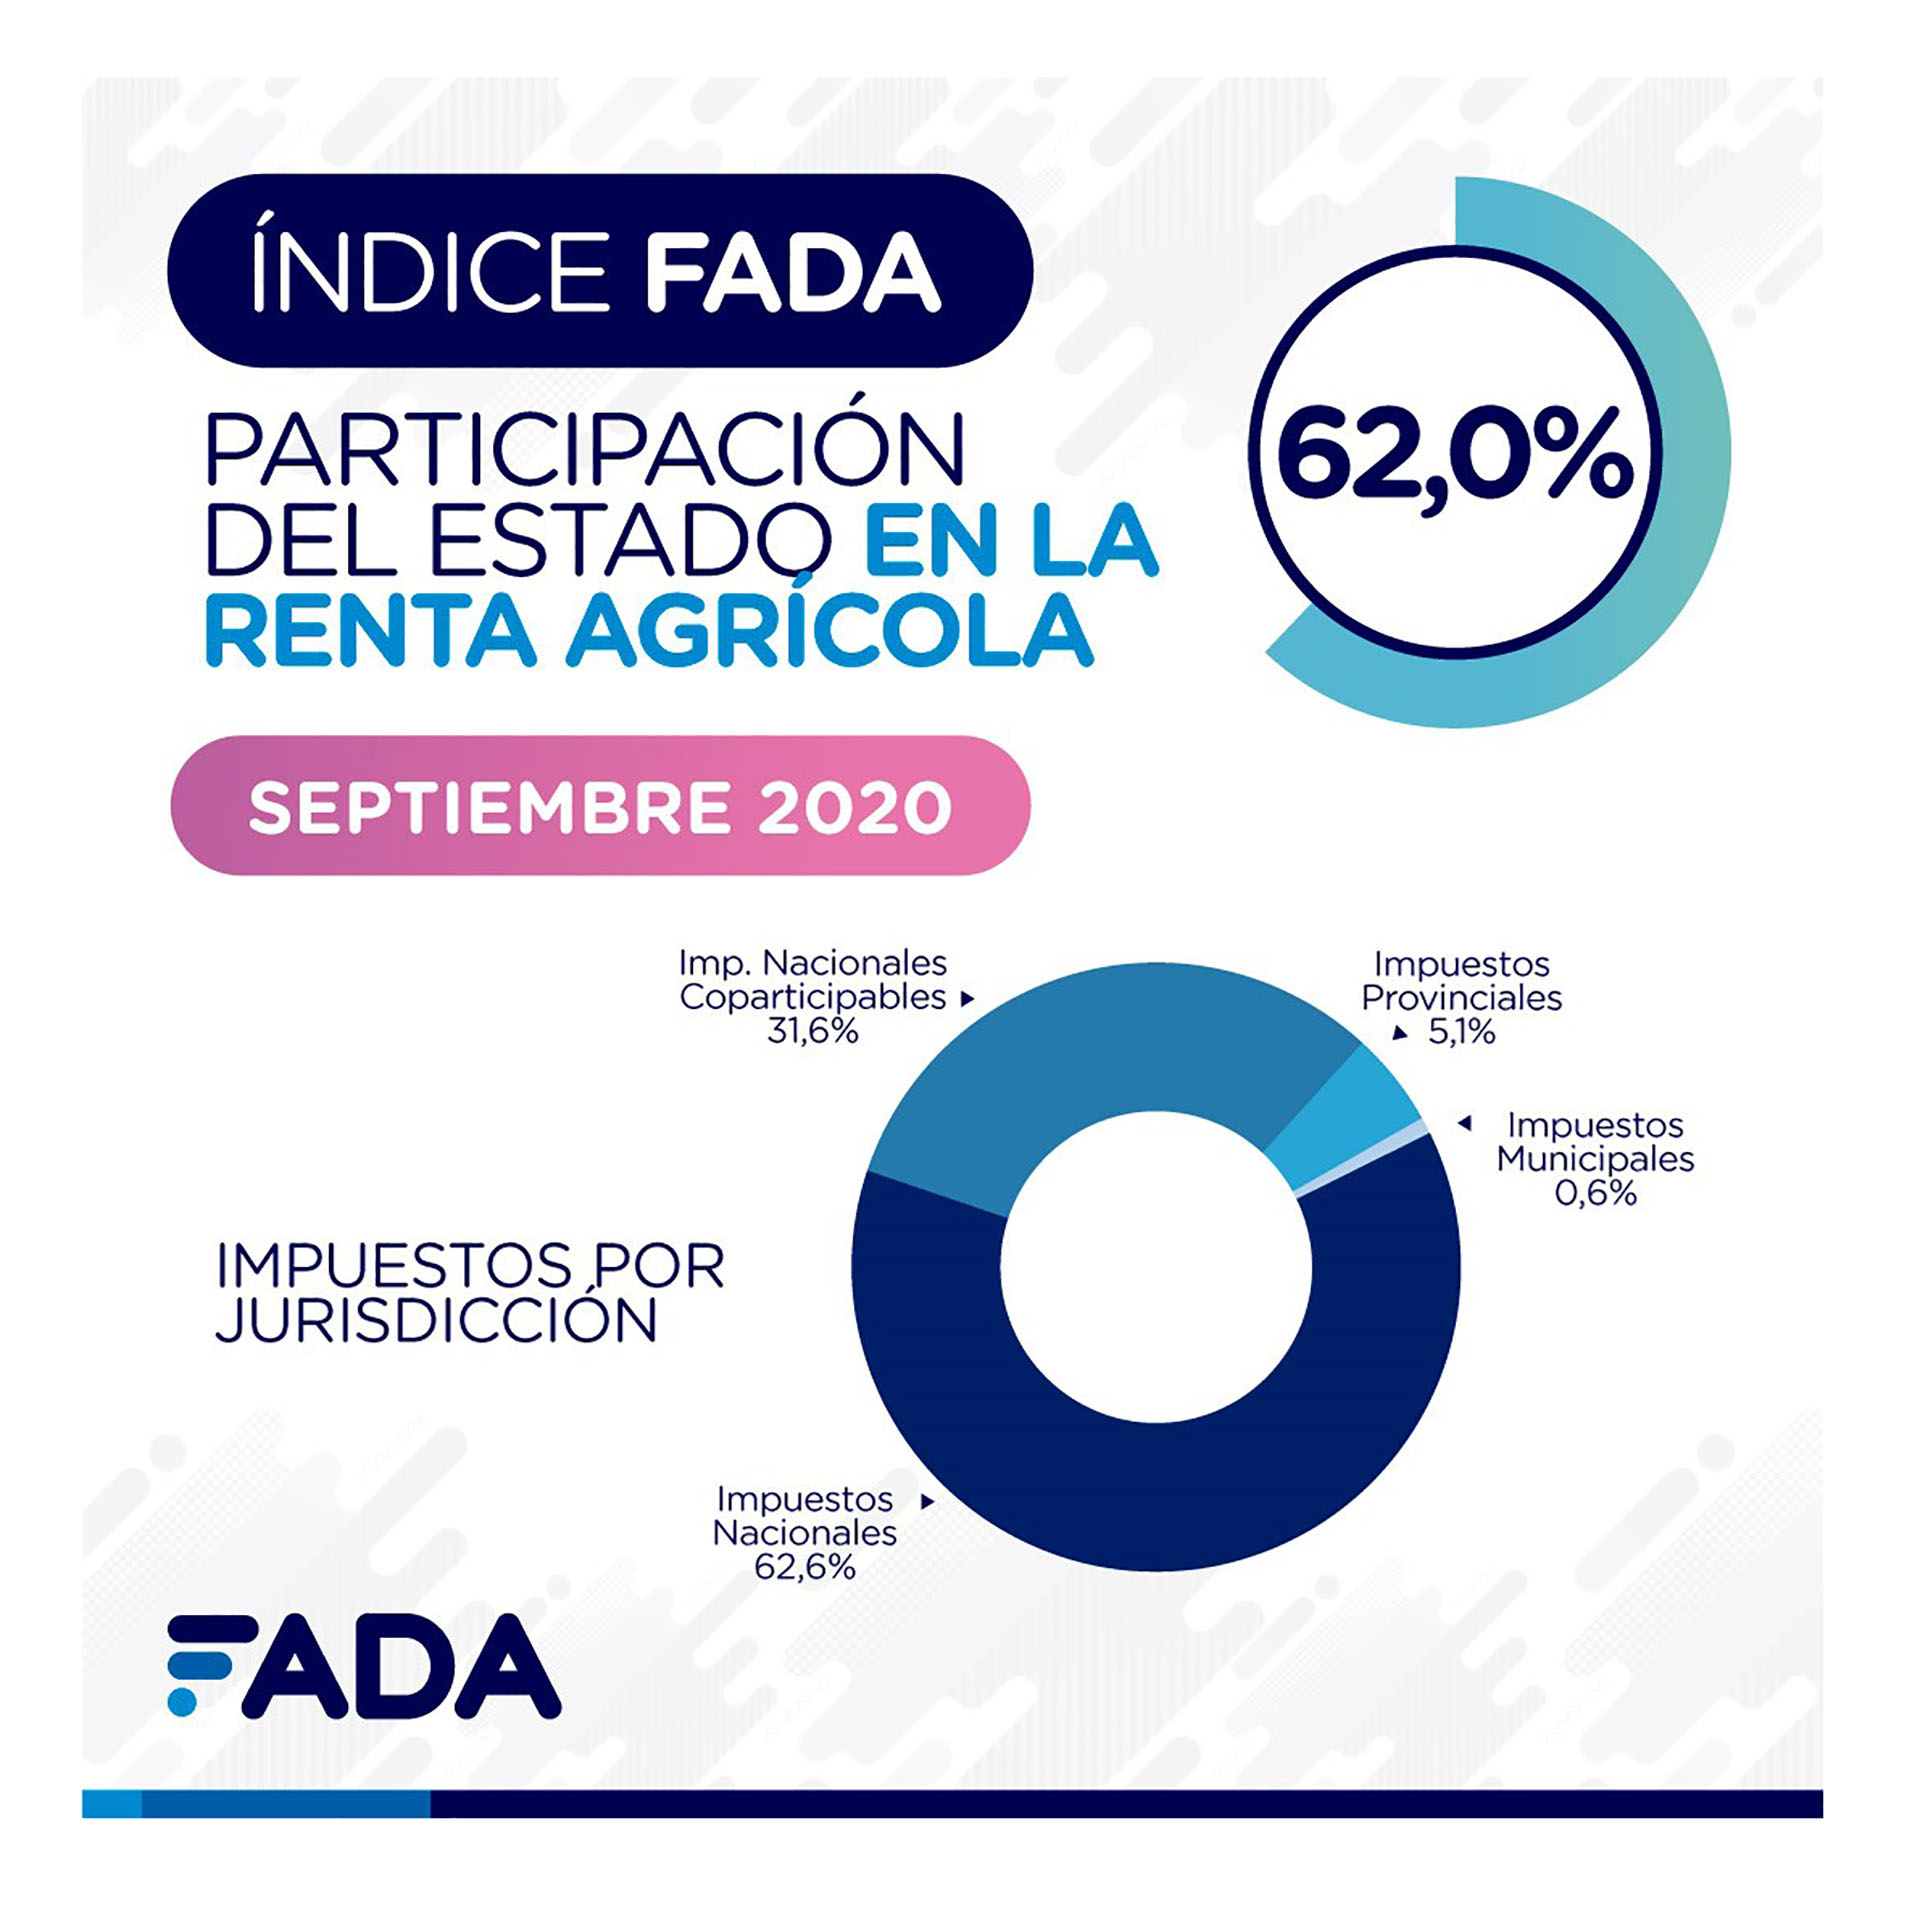 La participación del Estado en la renta agrícola, durante el presente mes, mediante el cobro de los impuestos (FADA)